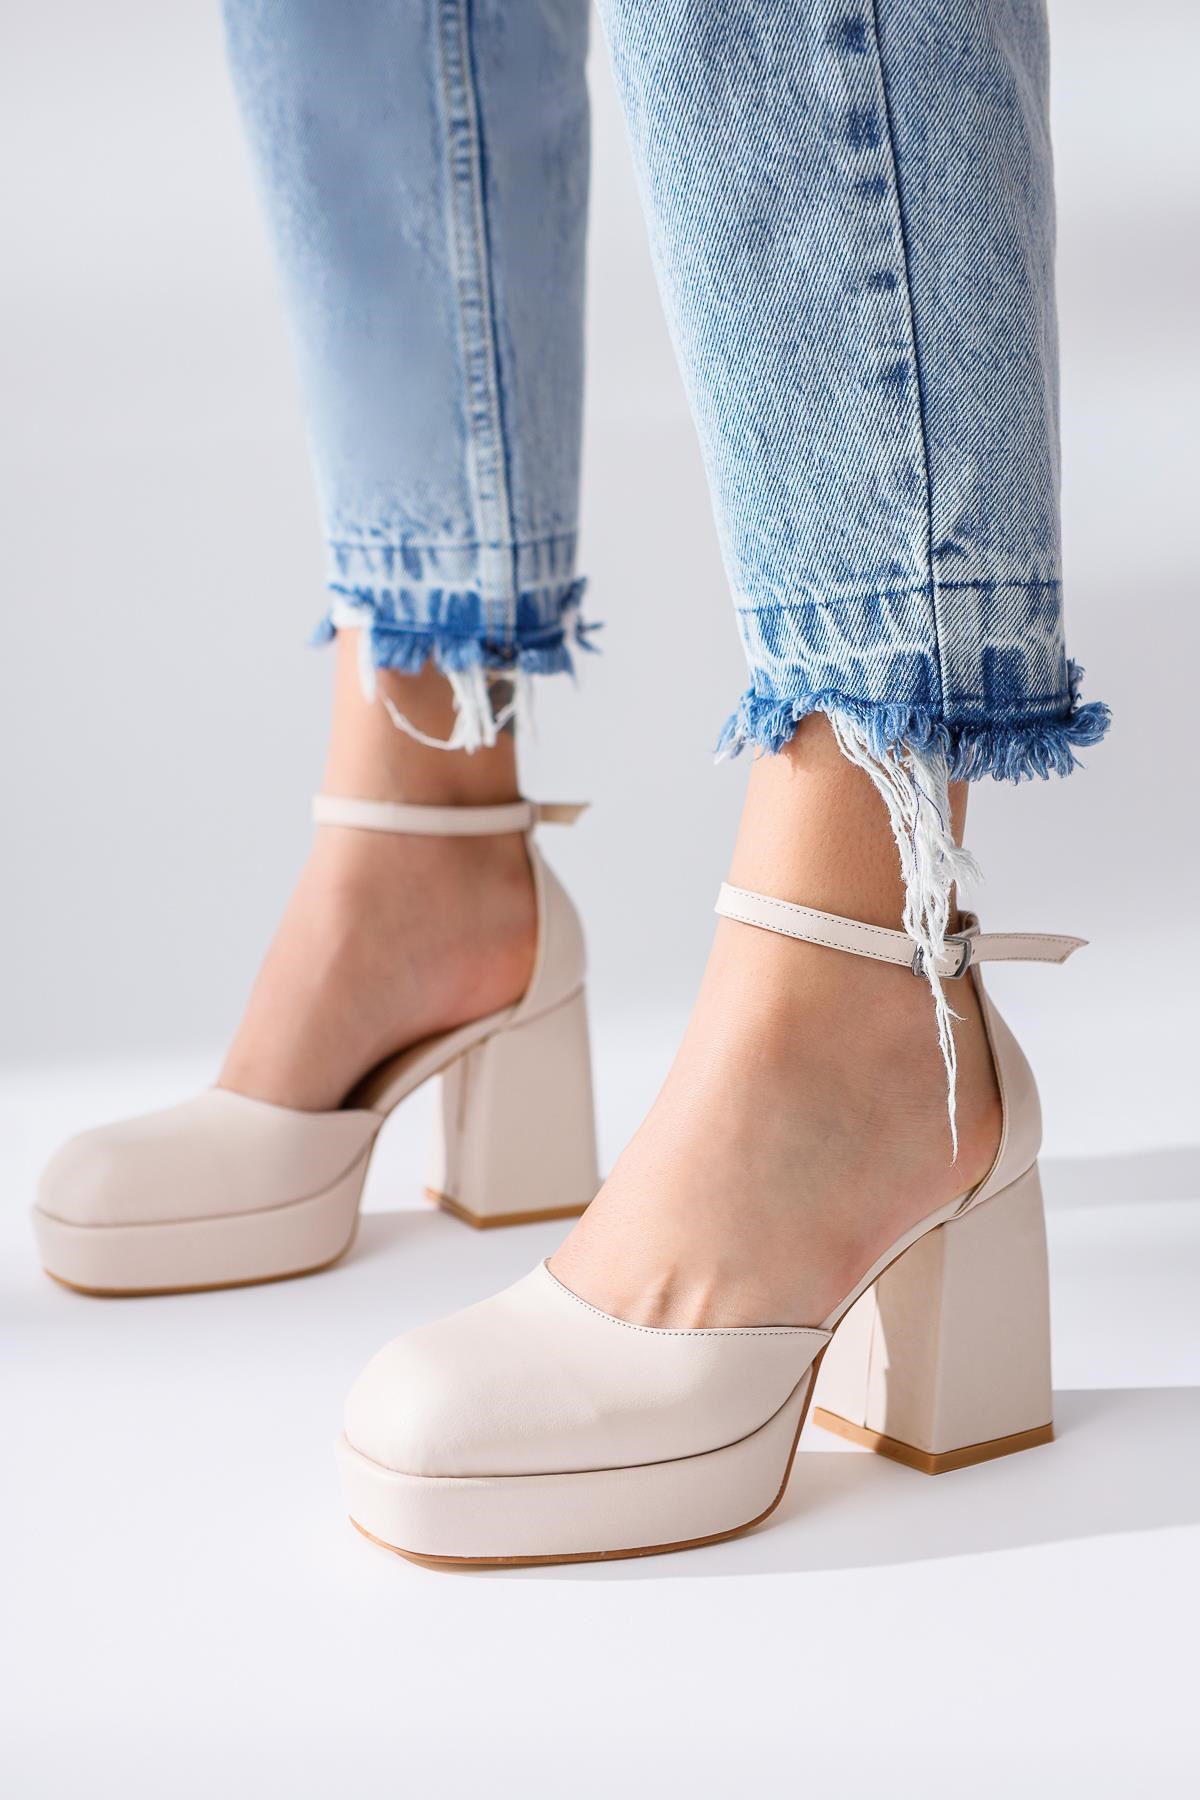 Aubrey Bej Platformlu Kalın Topuklu Ayakkabı | Limoya.com ile Modayı Keşfet!